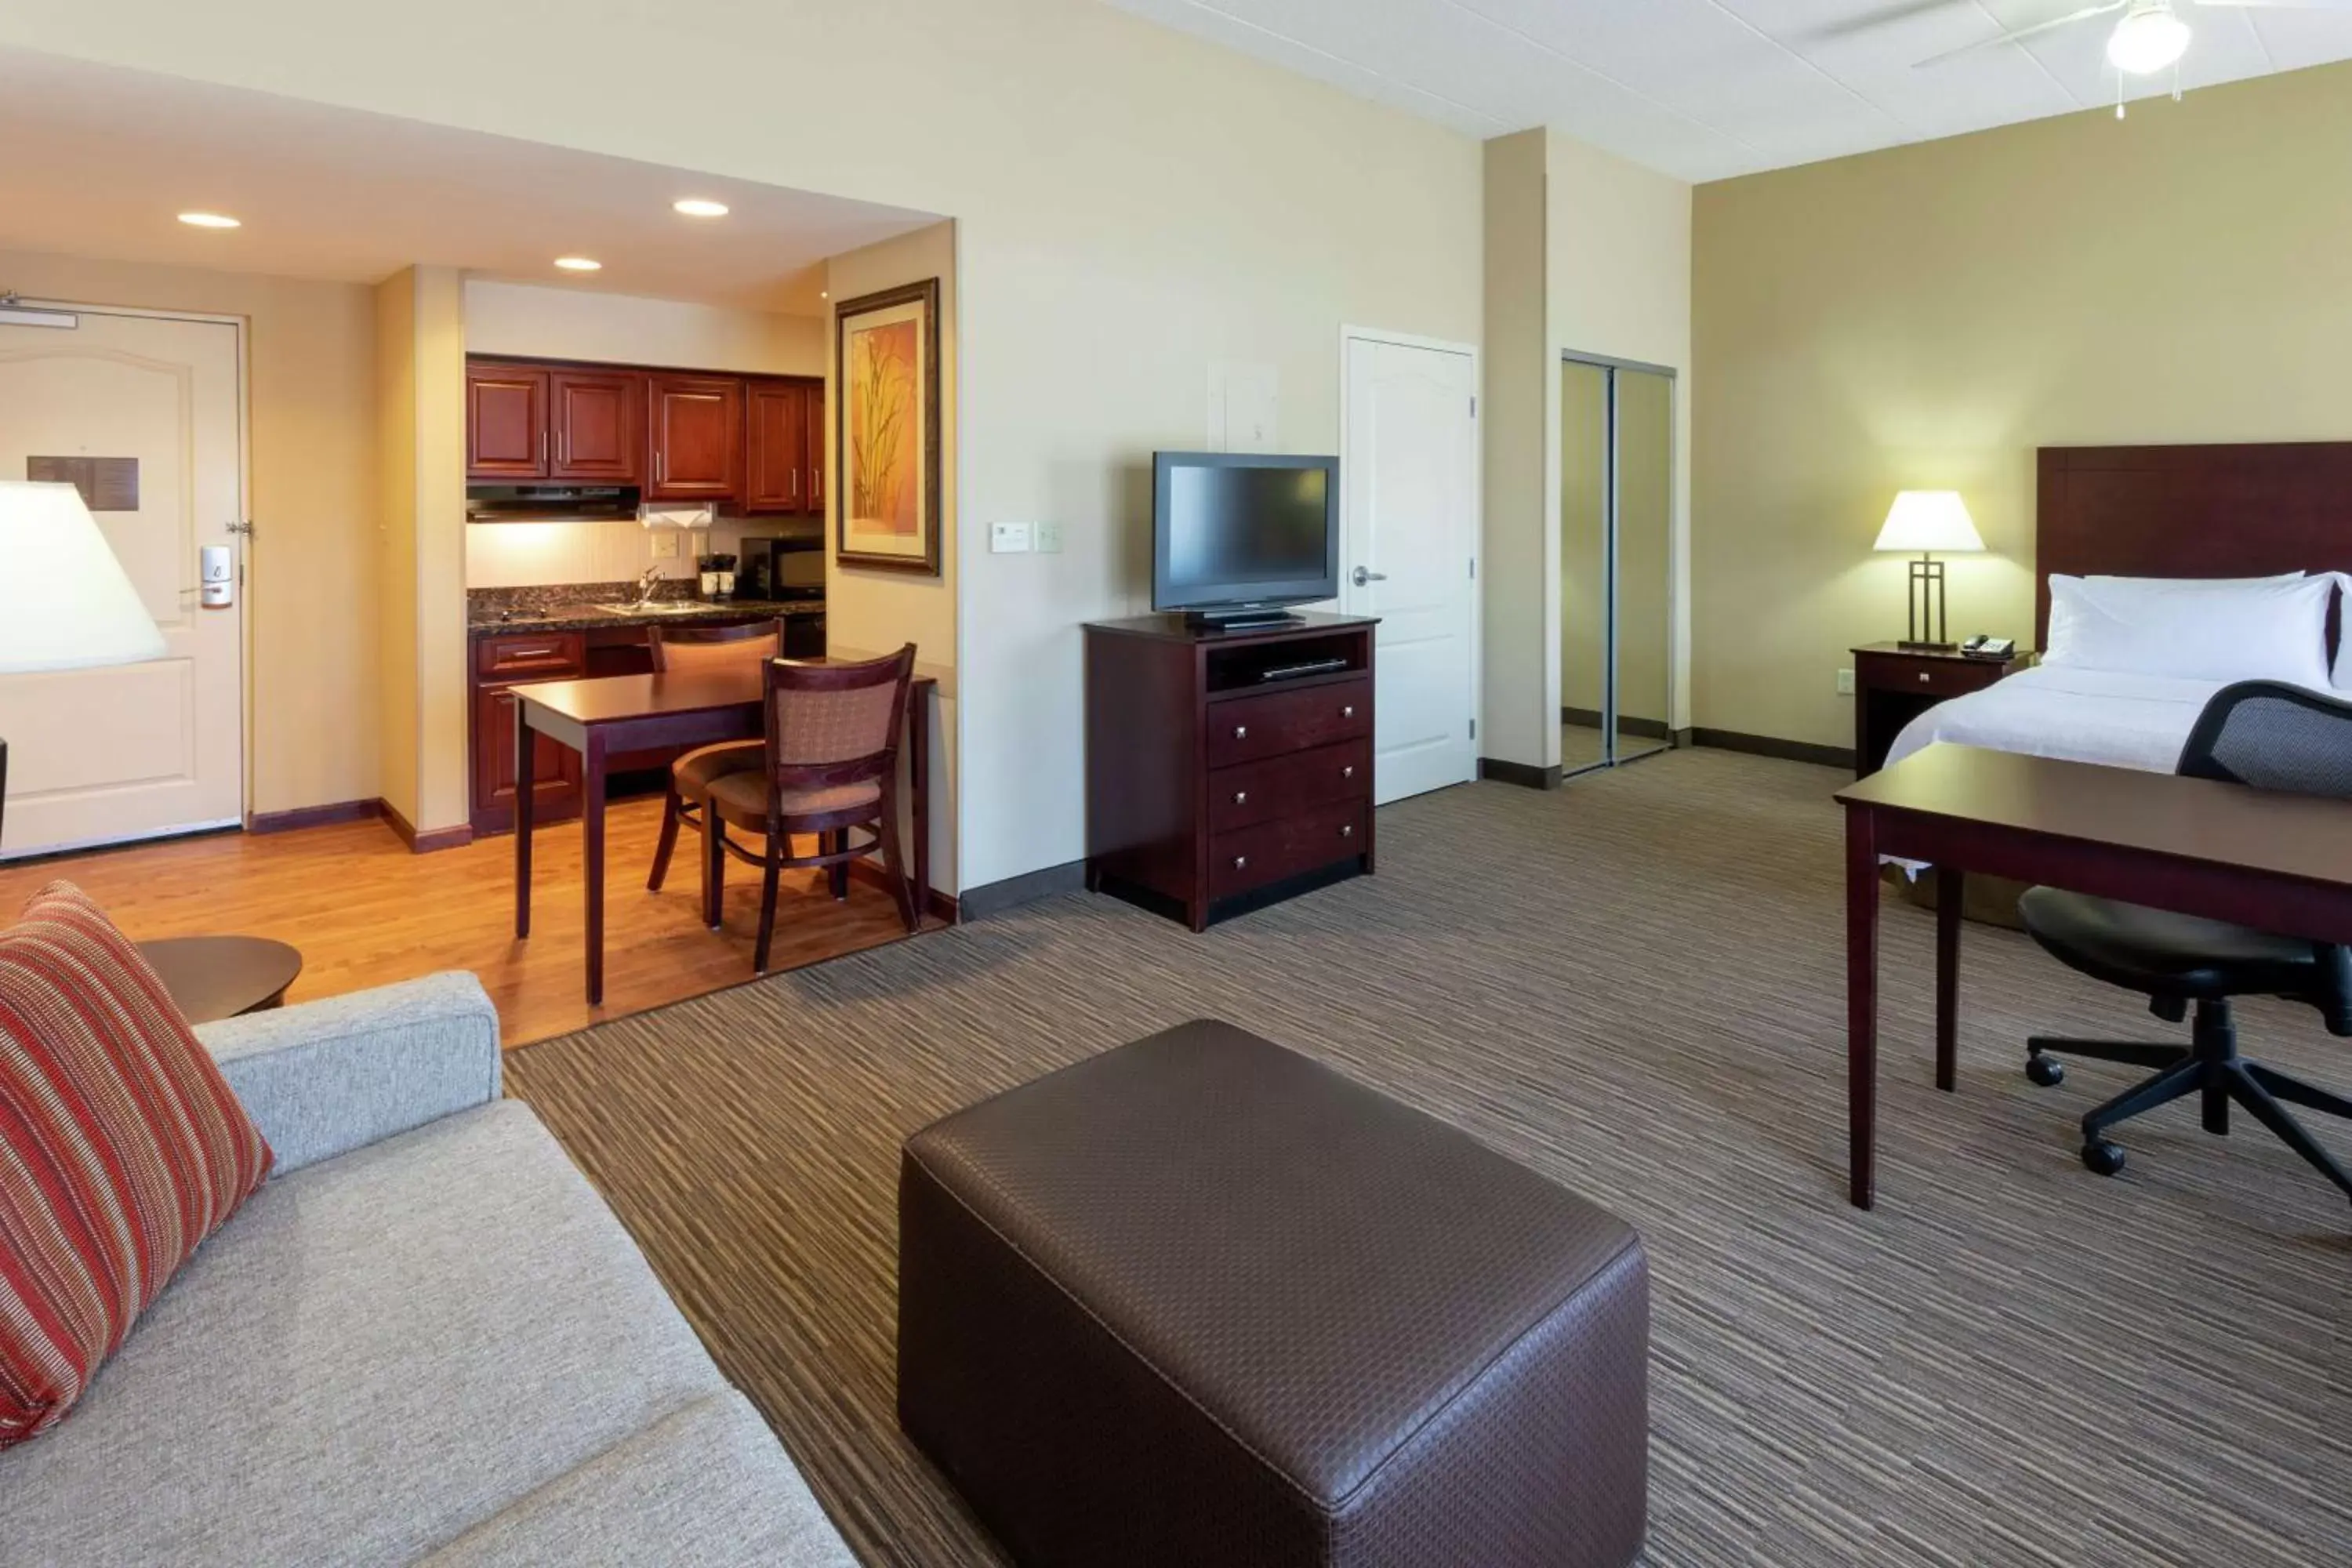 Bedroom, TV/Entertainment Center in Homewood Suites by Hilton Minneapolis - Saint Louis Park at West End